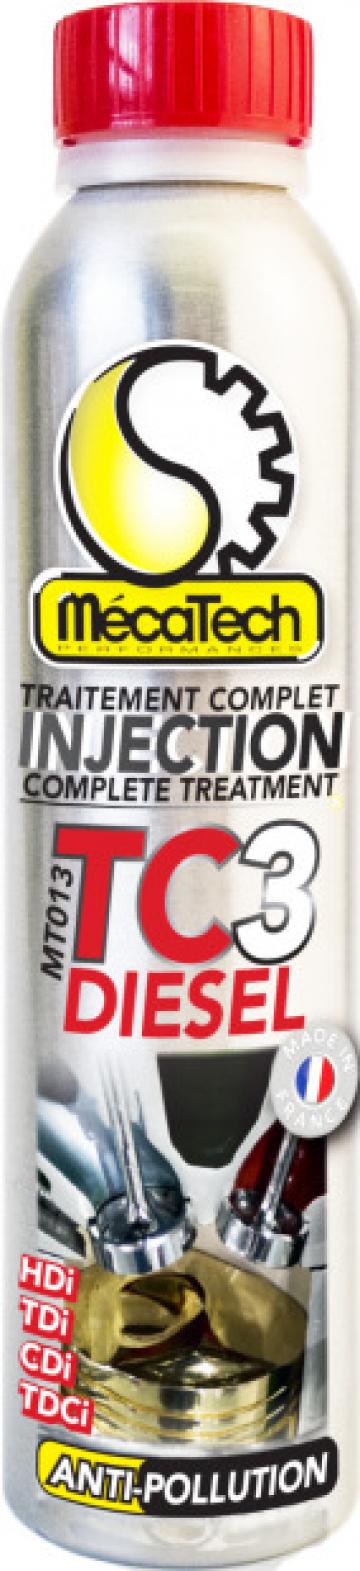 Solutie curatare injectoare - TC3 diesel (300ml) de la Edy Impex 2003